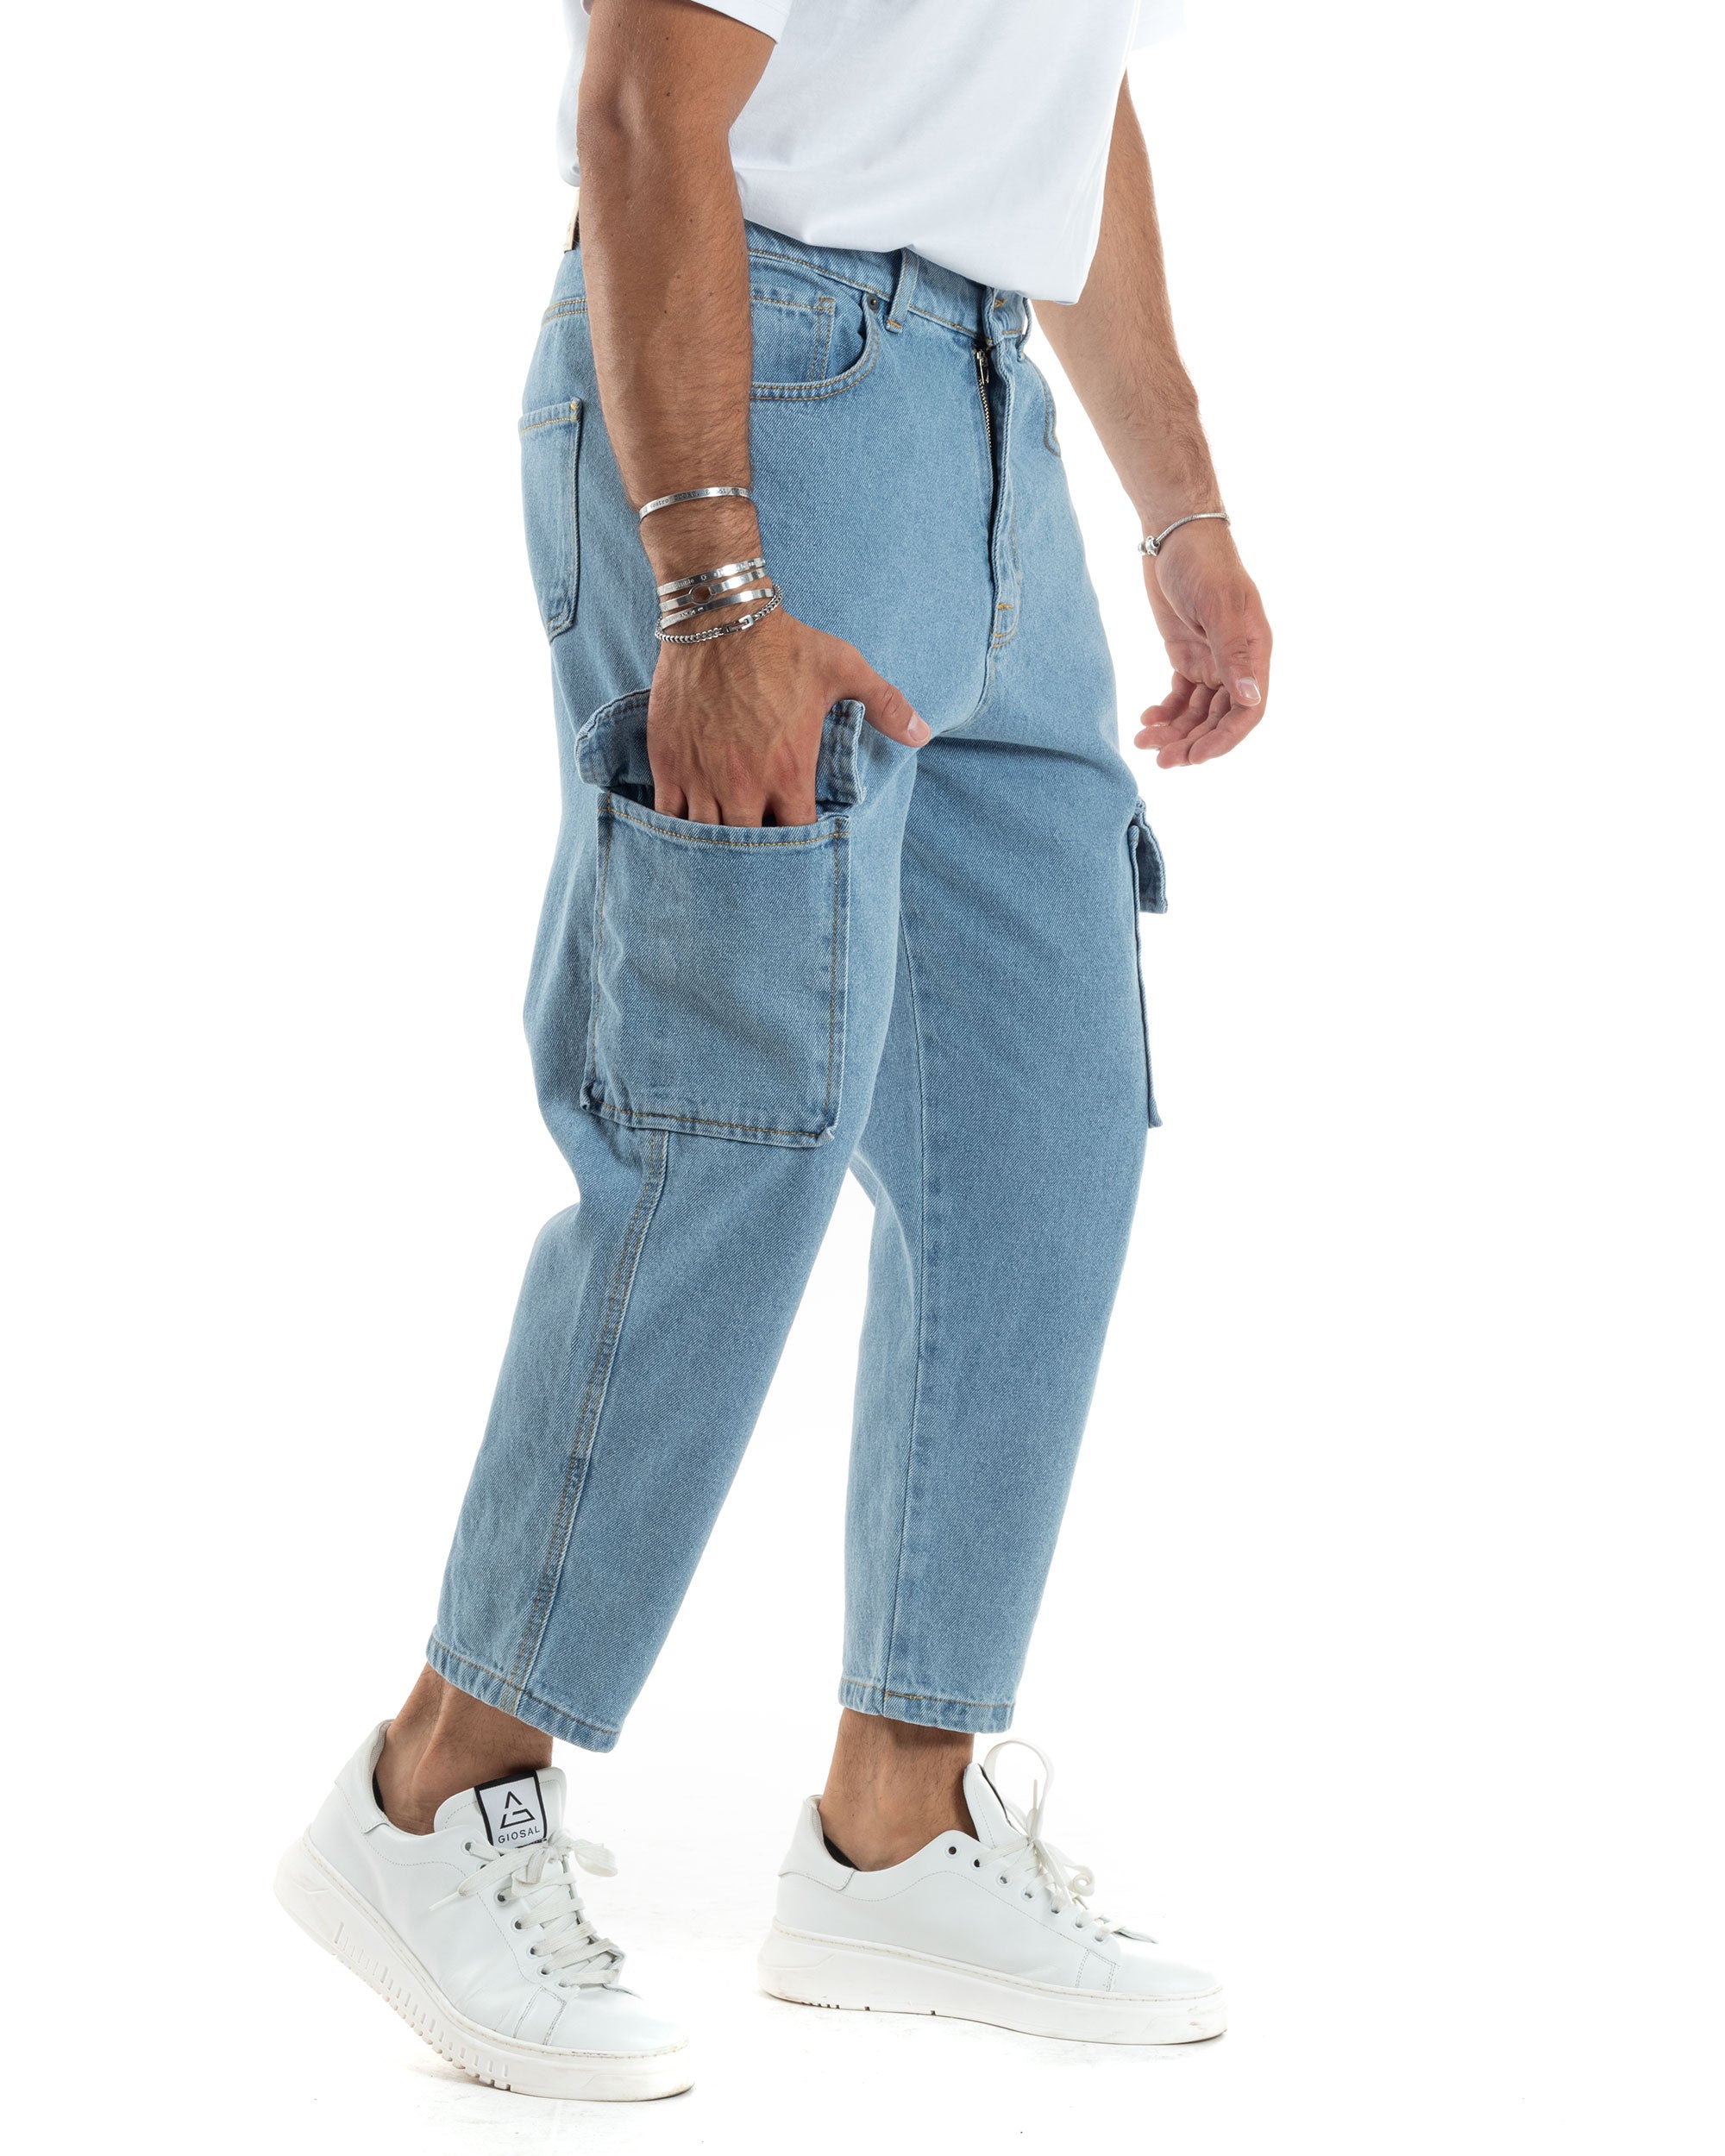 Pantaloni Jeans Uomo Cargo Straight Fit Alla Caviglia Casual Basic Cinque Tasche Con Tasche Tasconi Denim GIOSAL-JS1041A